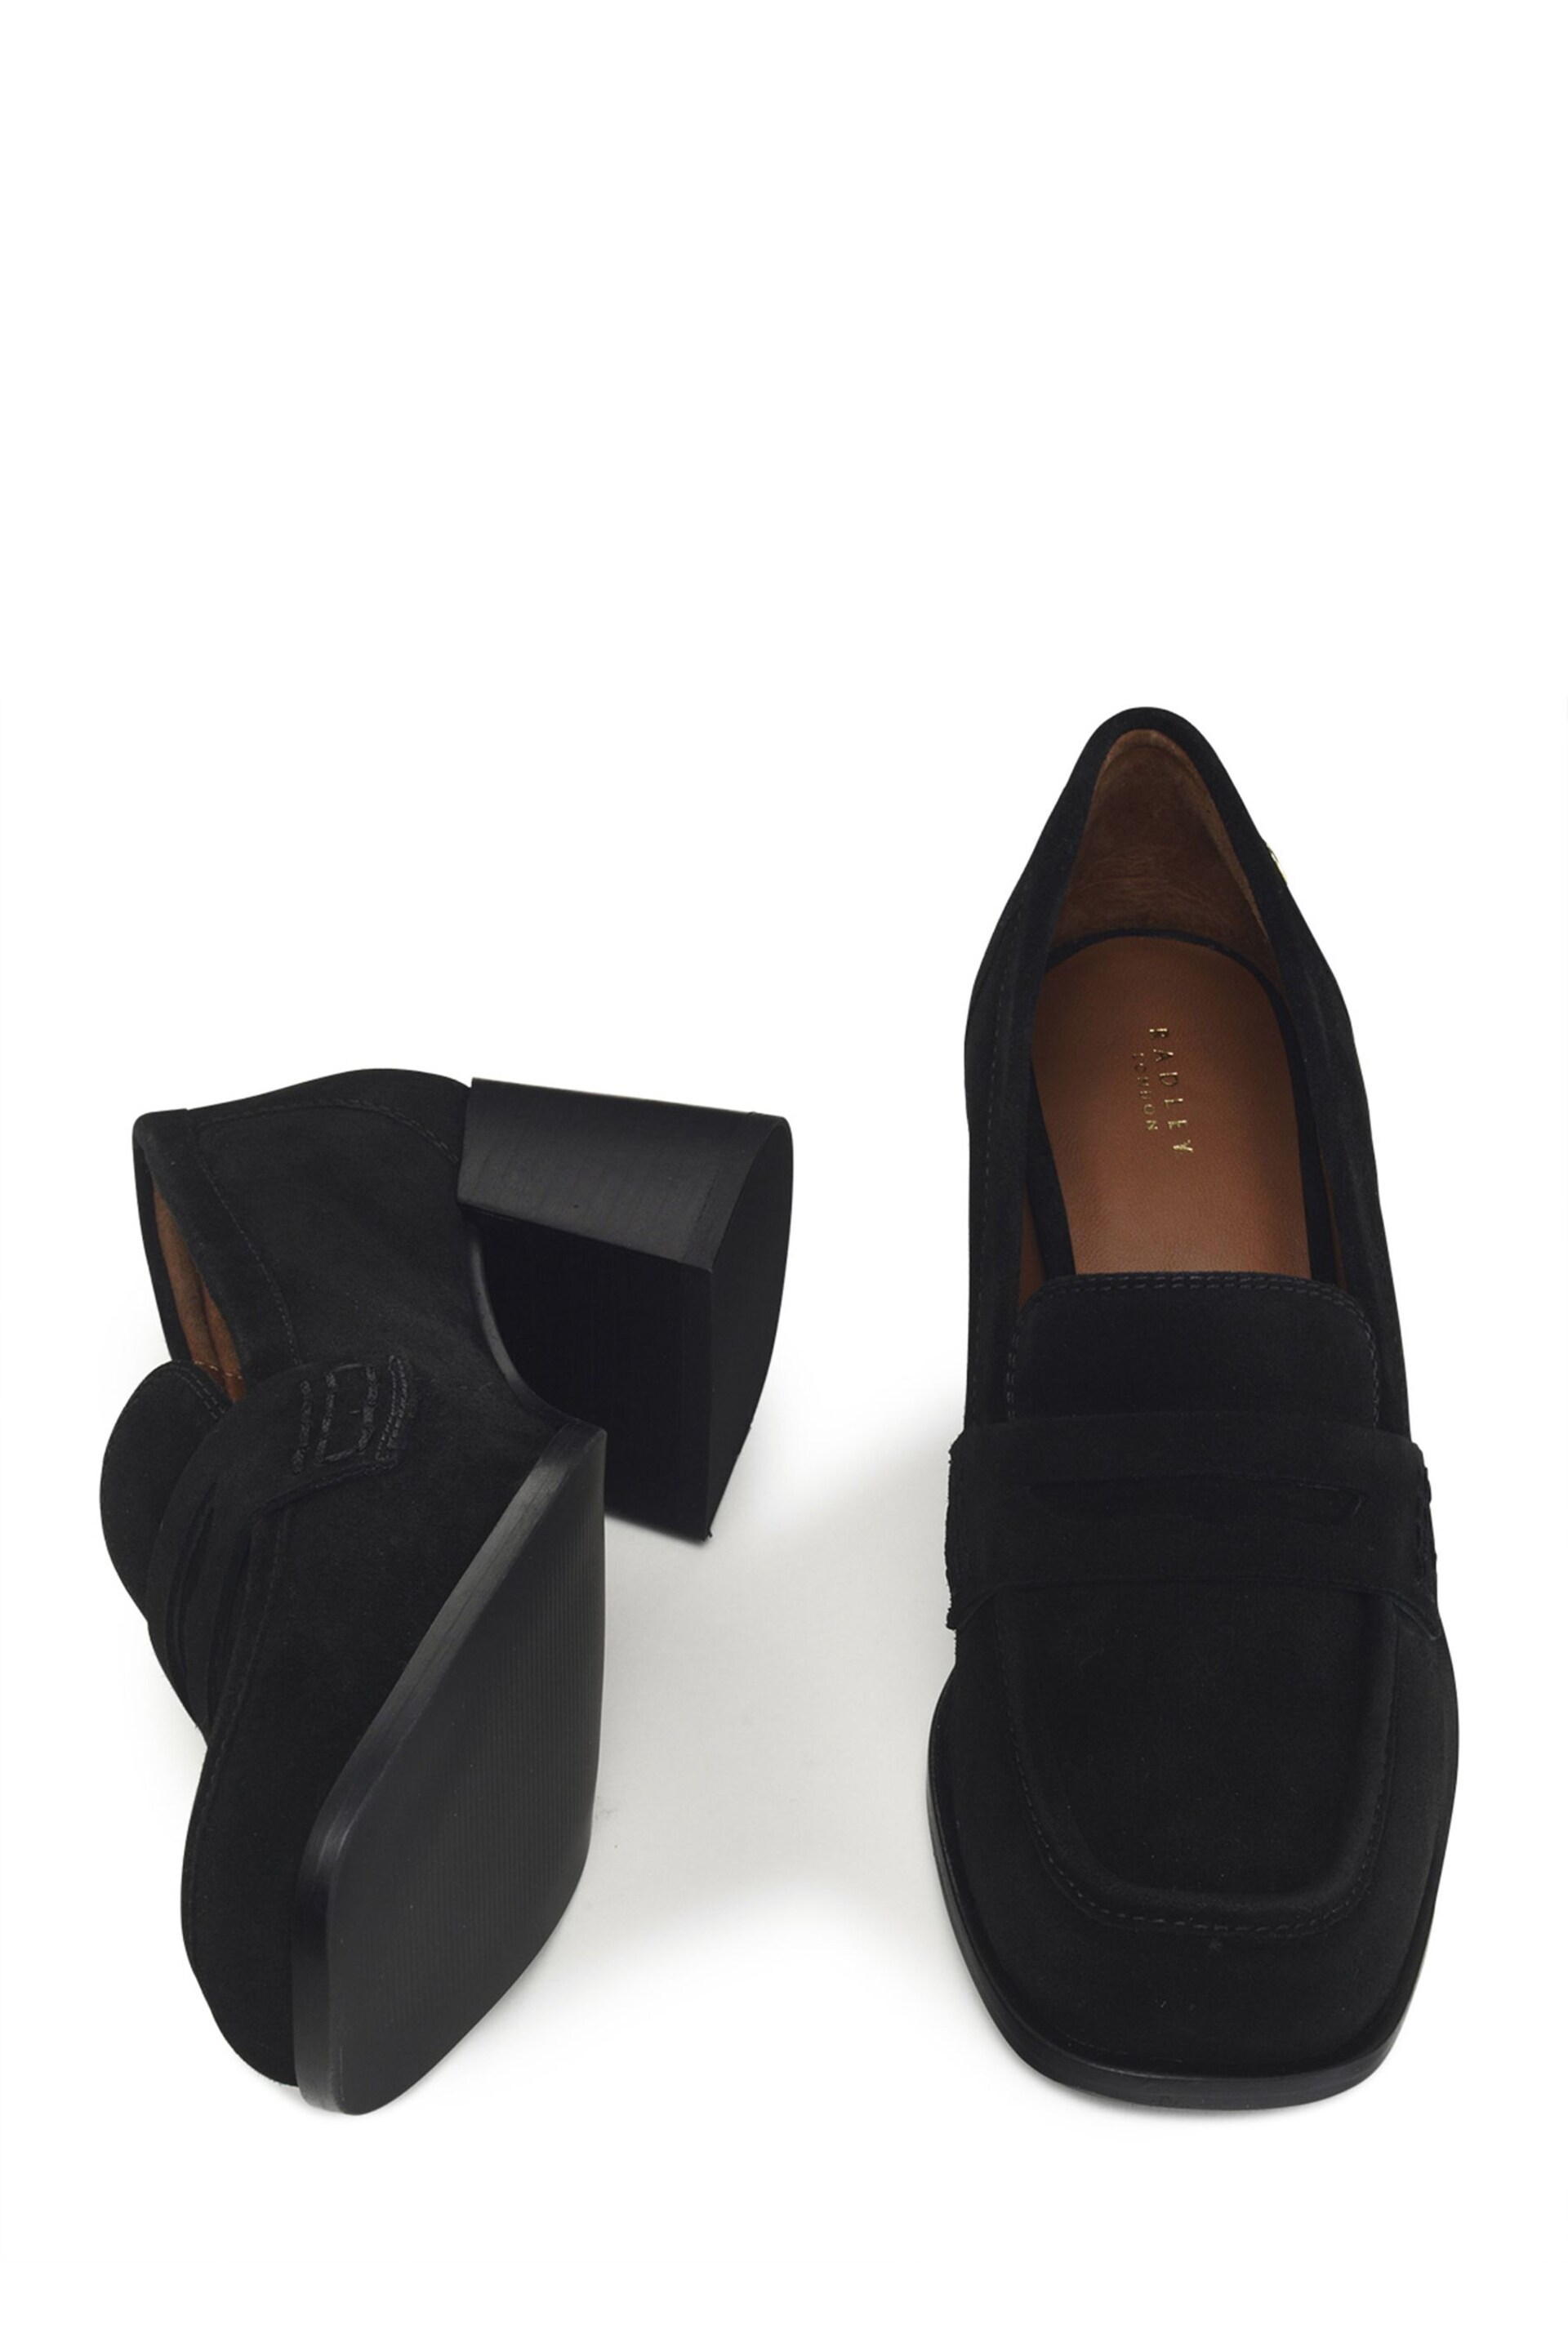 Radley London Thistle Row Midi Black Heel Loafers - Image 3 of 4